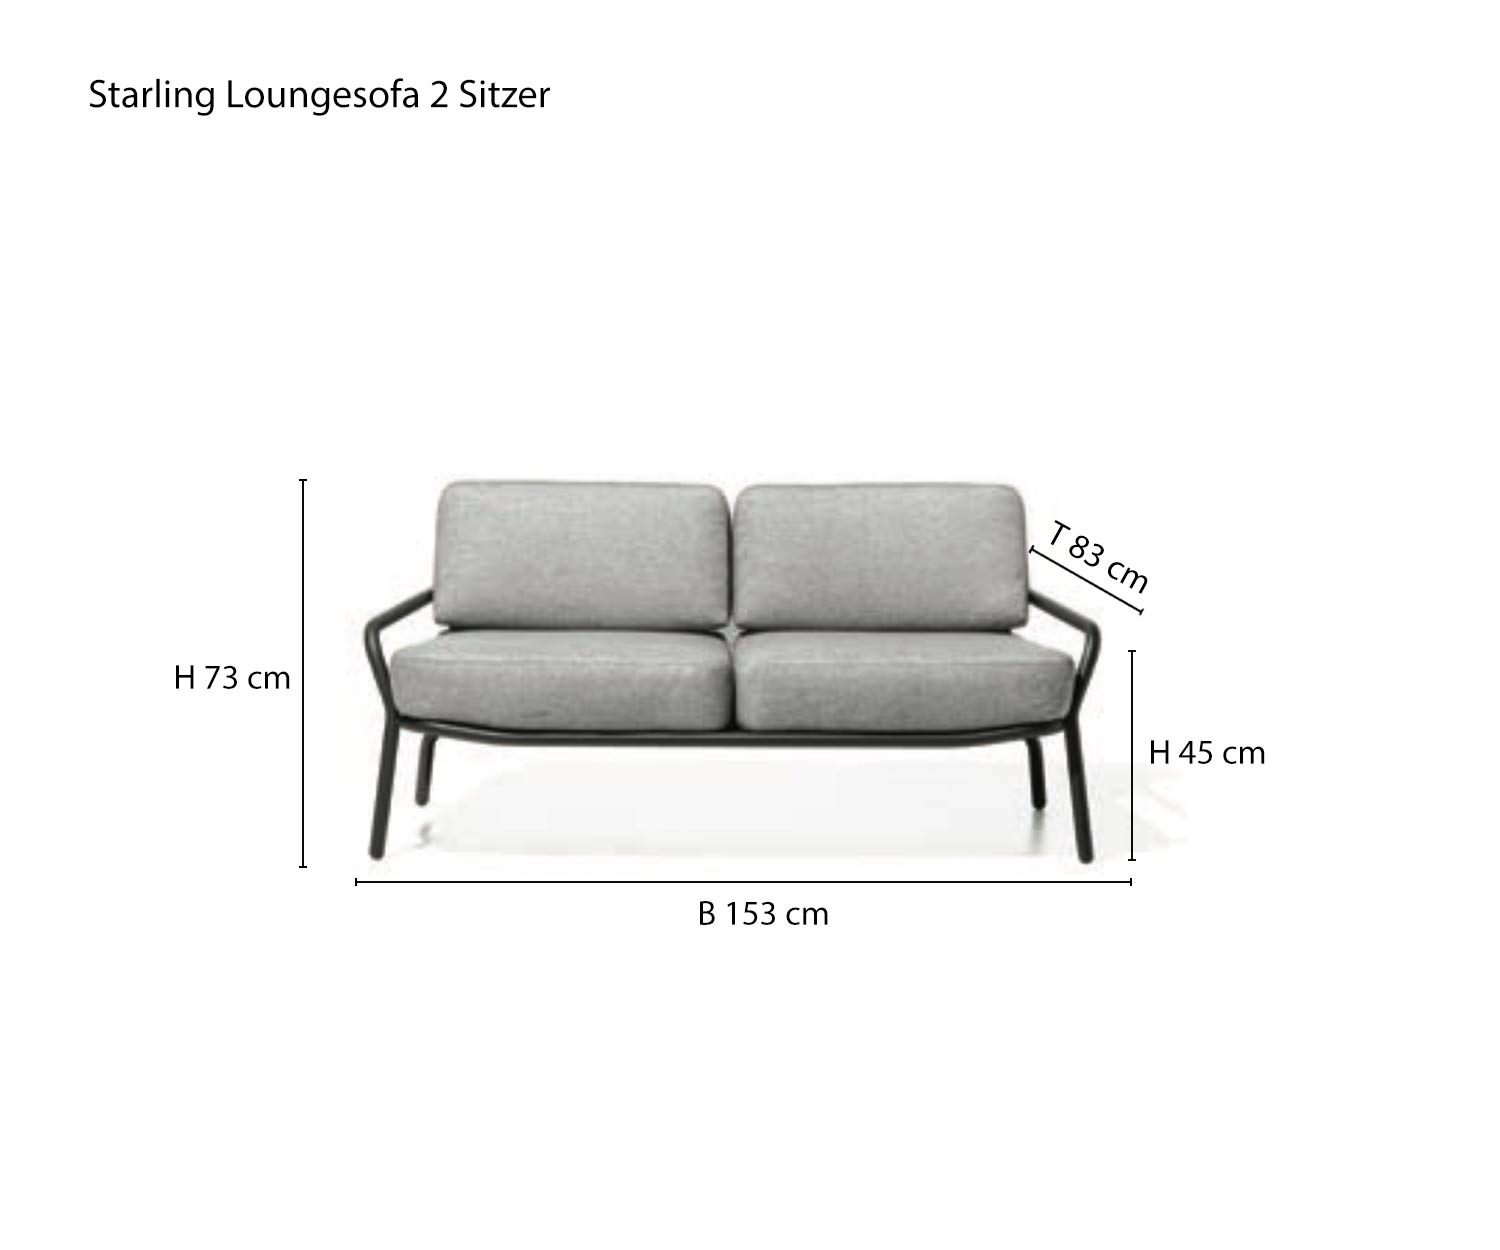 Schizzo del divano da giardino di design Starling a due posti